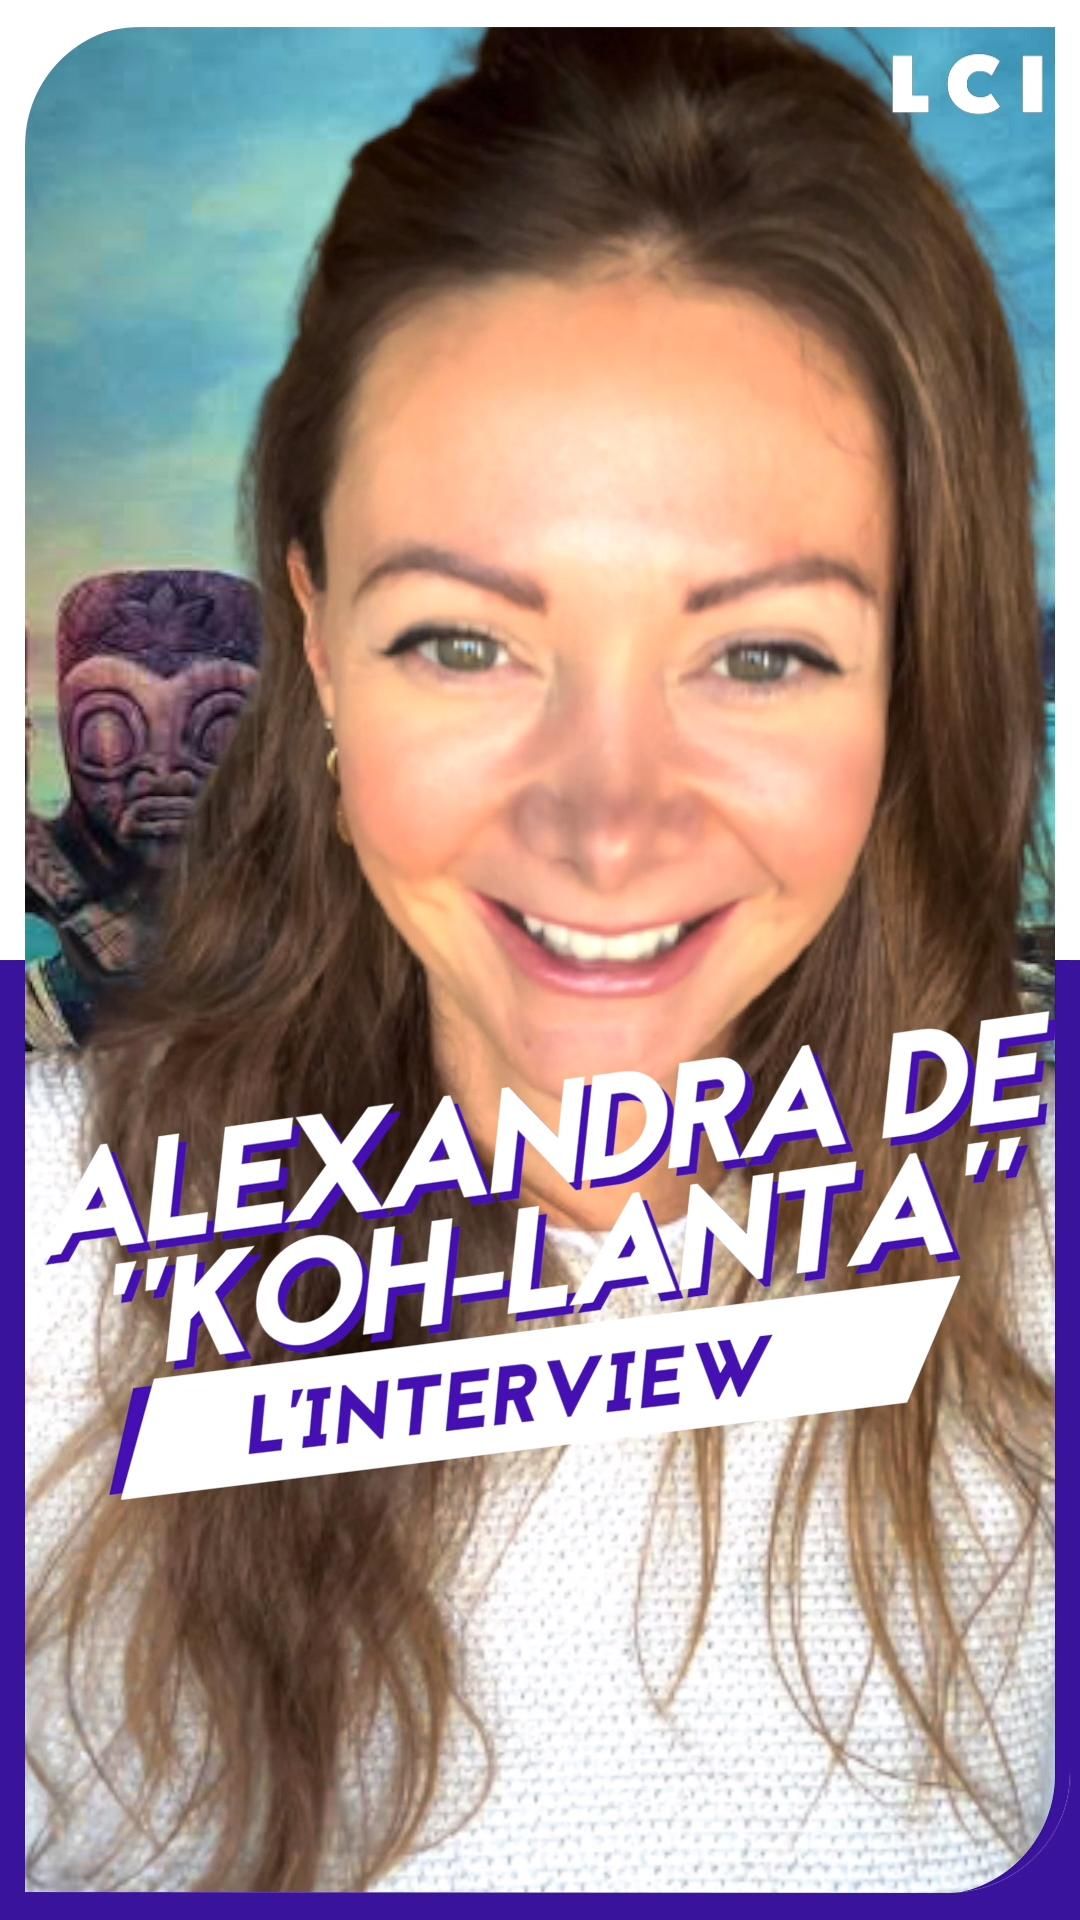 VIDEO LCI PLAY - Alexandra de "Koh-Lanta : la légende", l'interview